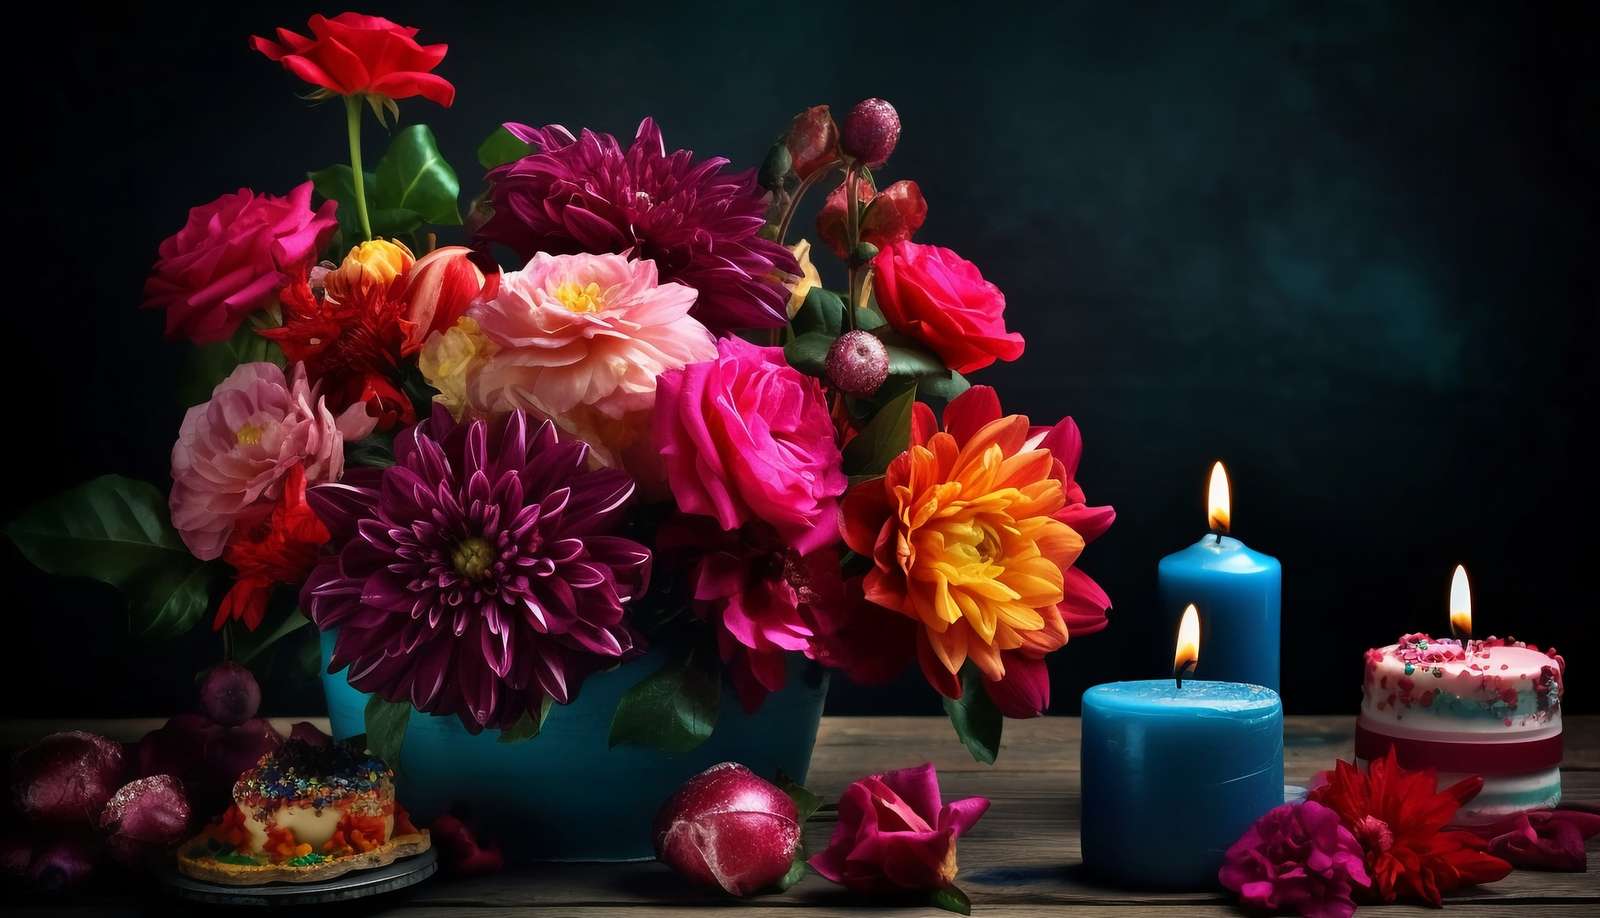 Kerzen neben einem Strauß bunter Blumen Online-Puzzle